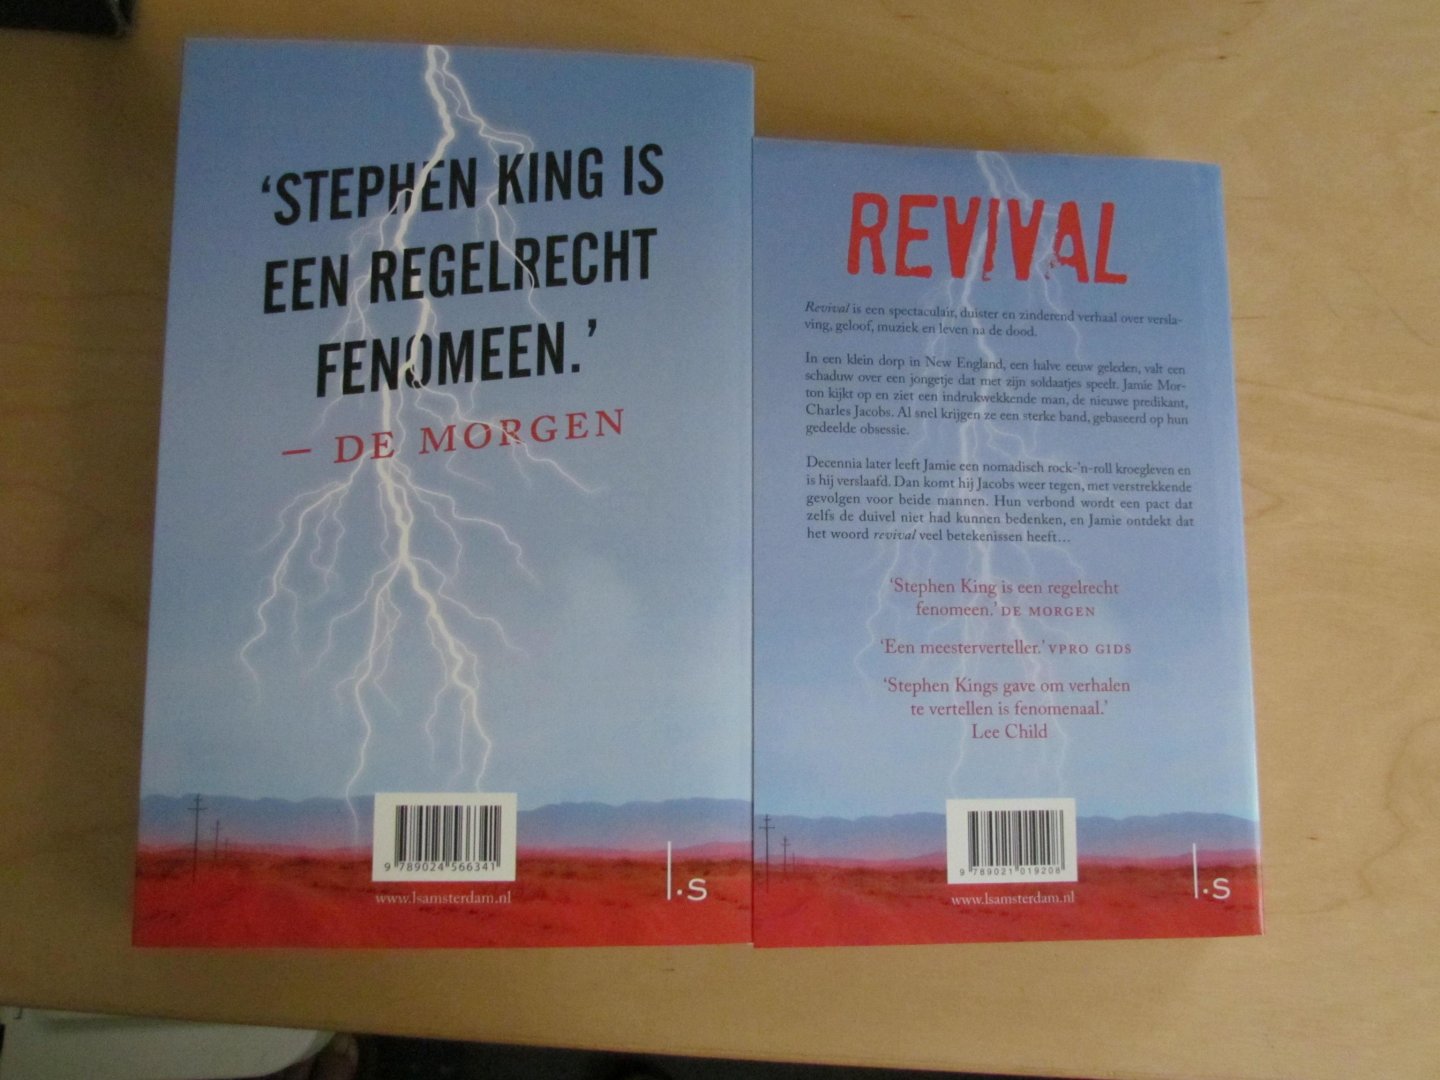 King, Stephen - Revival | Stephen King | (NL-talig) 9789021019208 Reefman editie -  Dit is de kleine speciale editie die tijdelijk alleen bij AH verkrijgbaar was